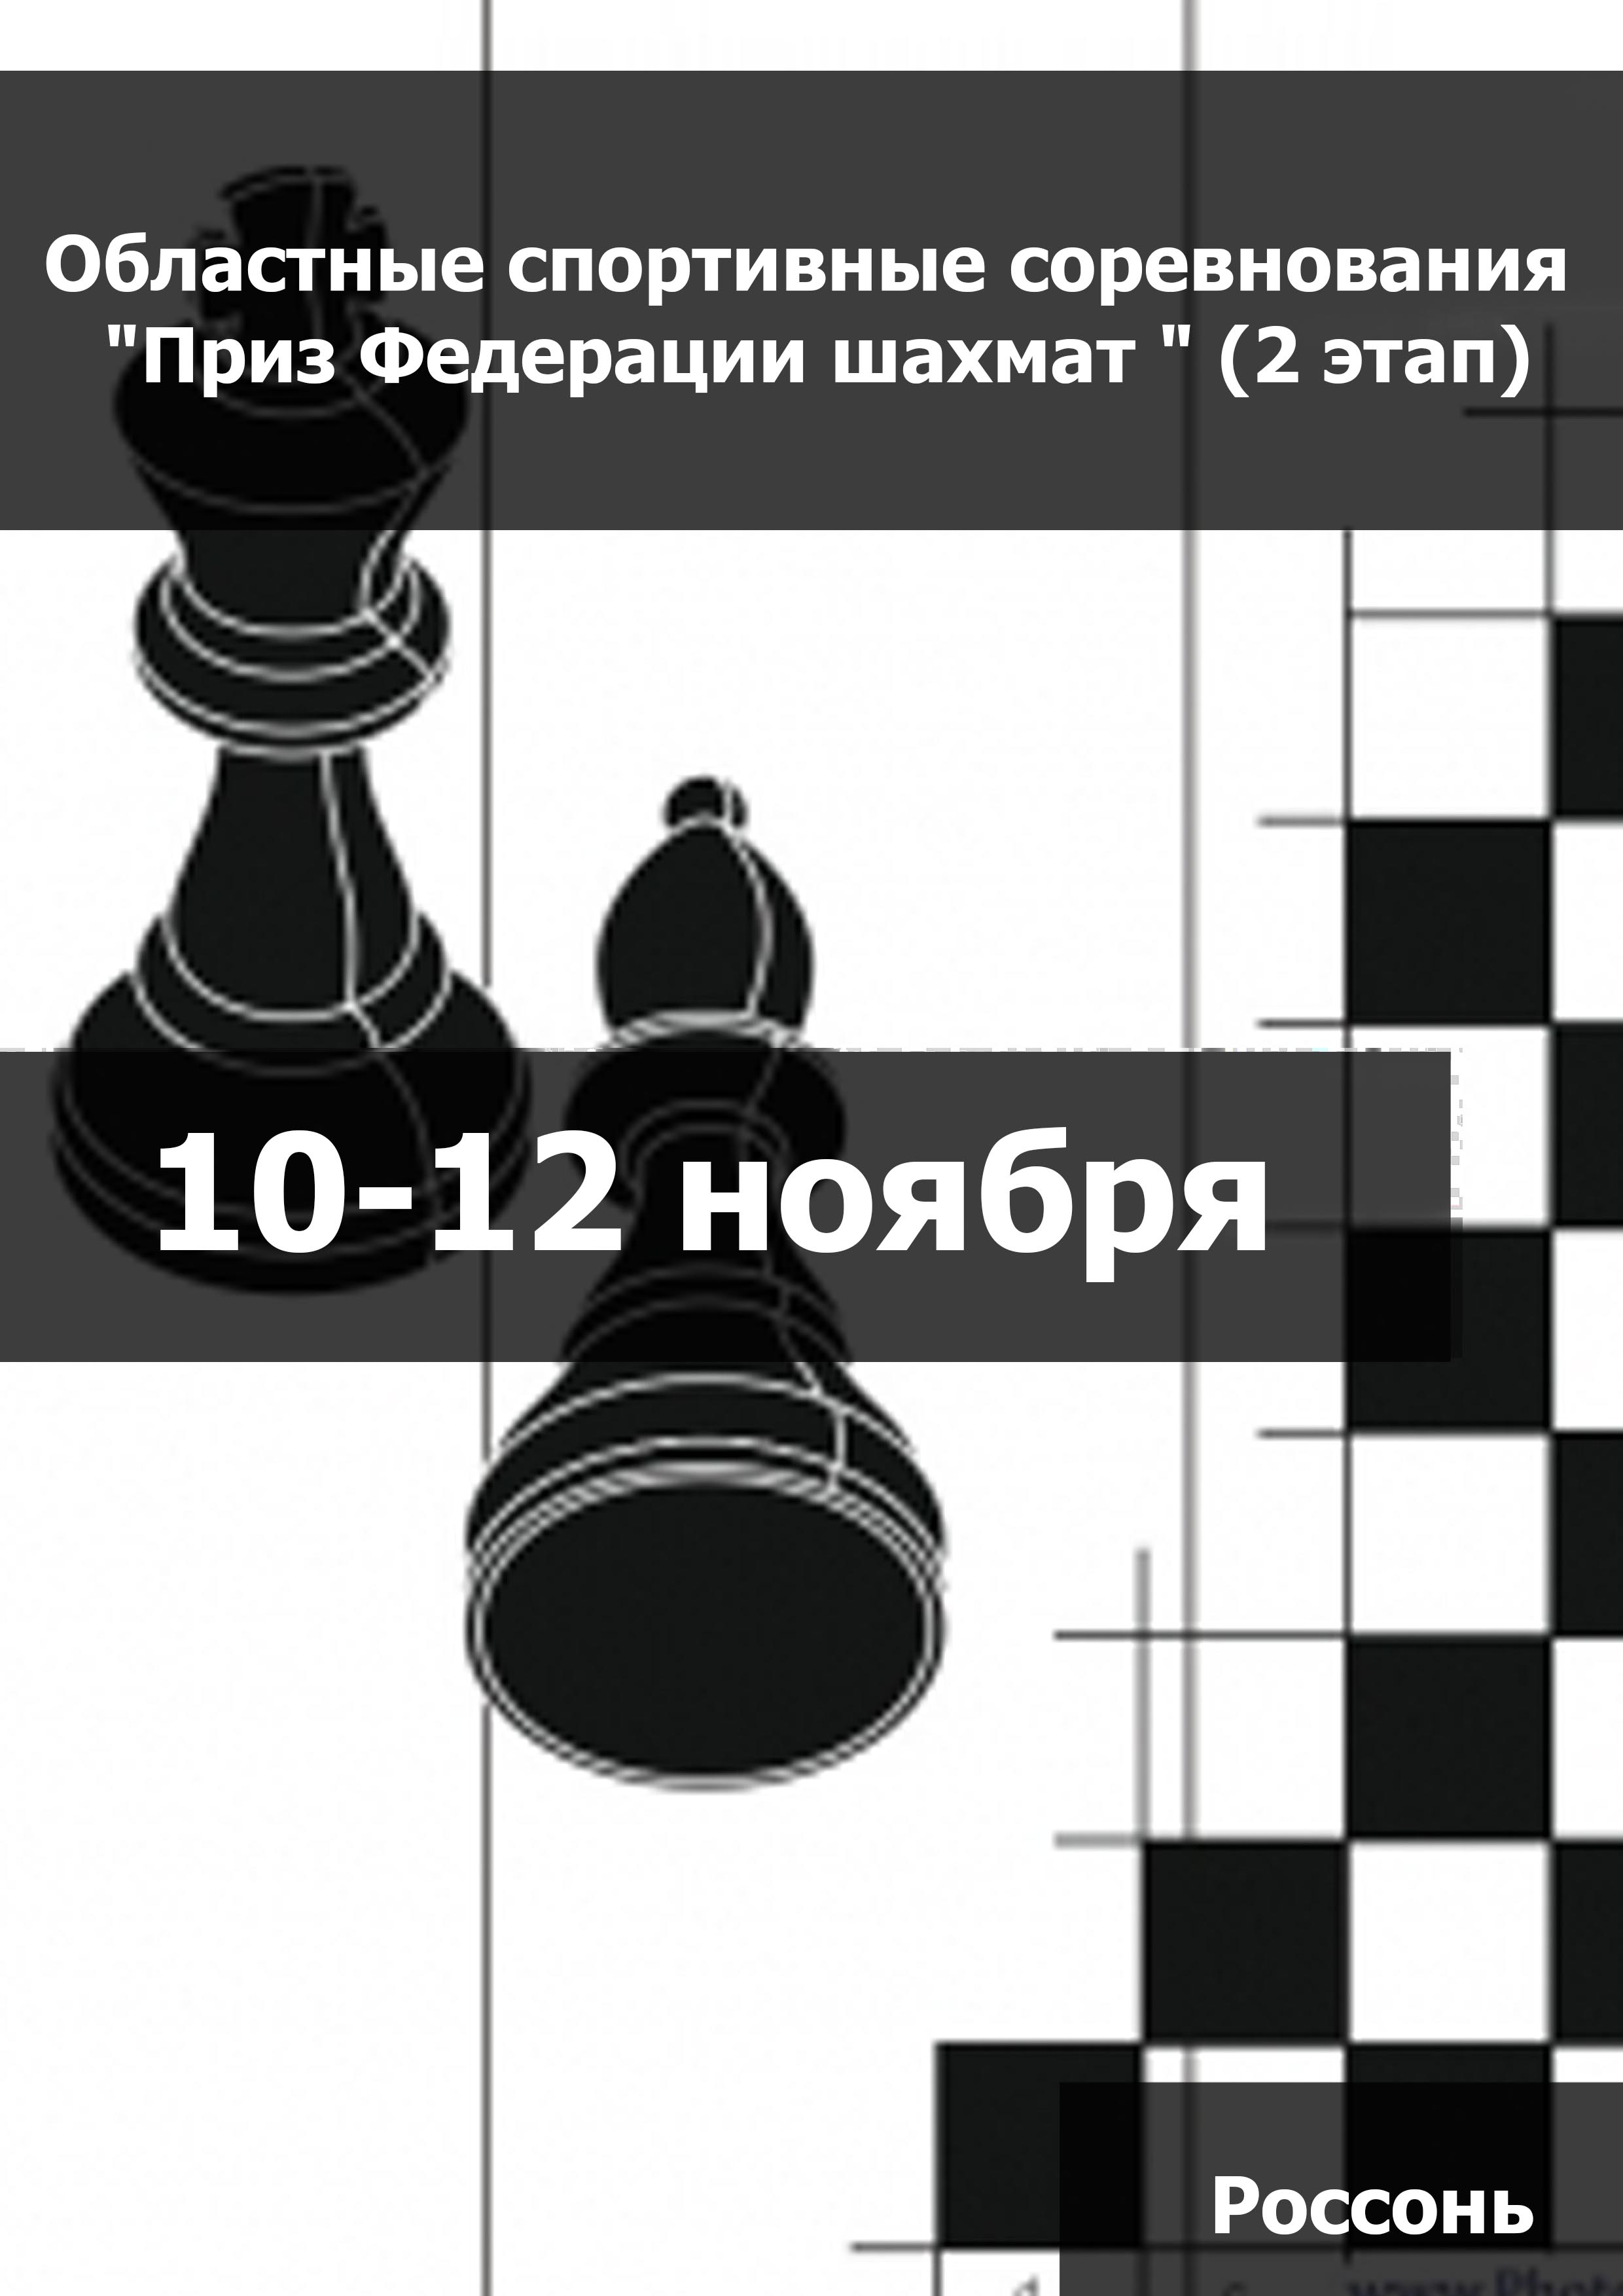 Областные спортивные соревнования "Приз Федерации шахмат " (2 этап) (мальчики, девочки до 11 лет) 10  Bulan November
 2023  tahun
 